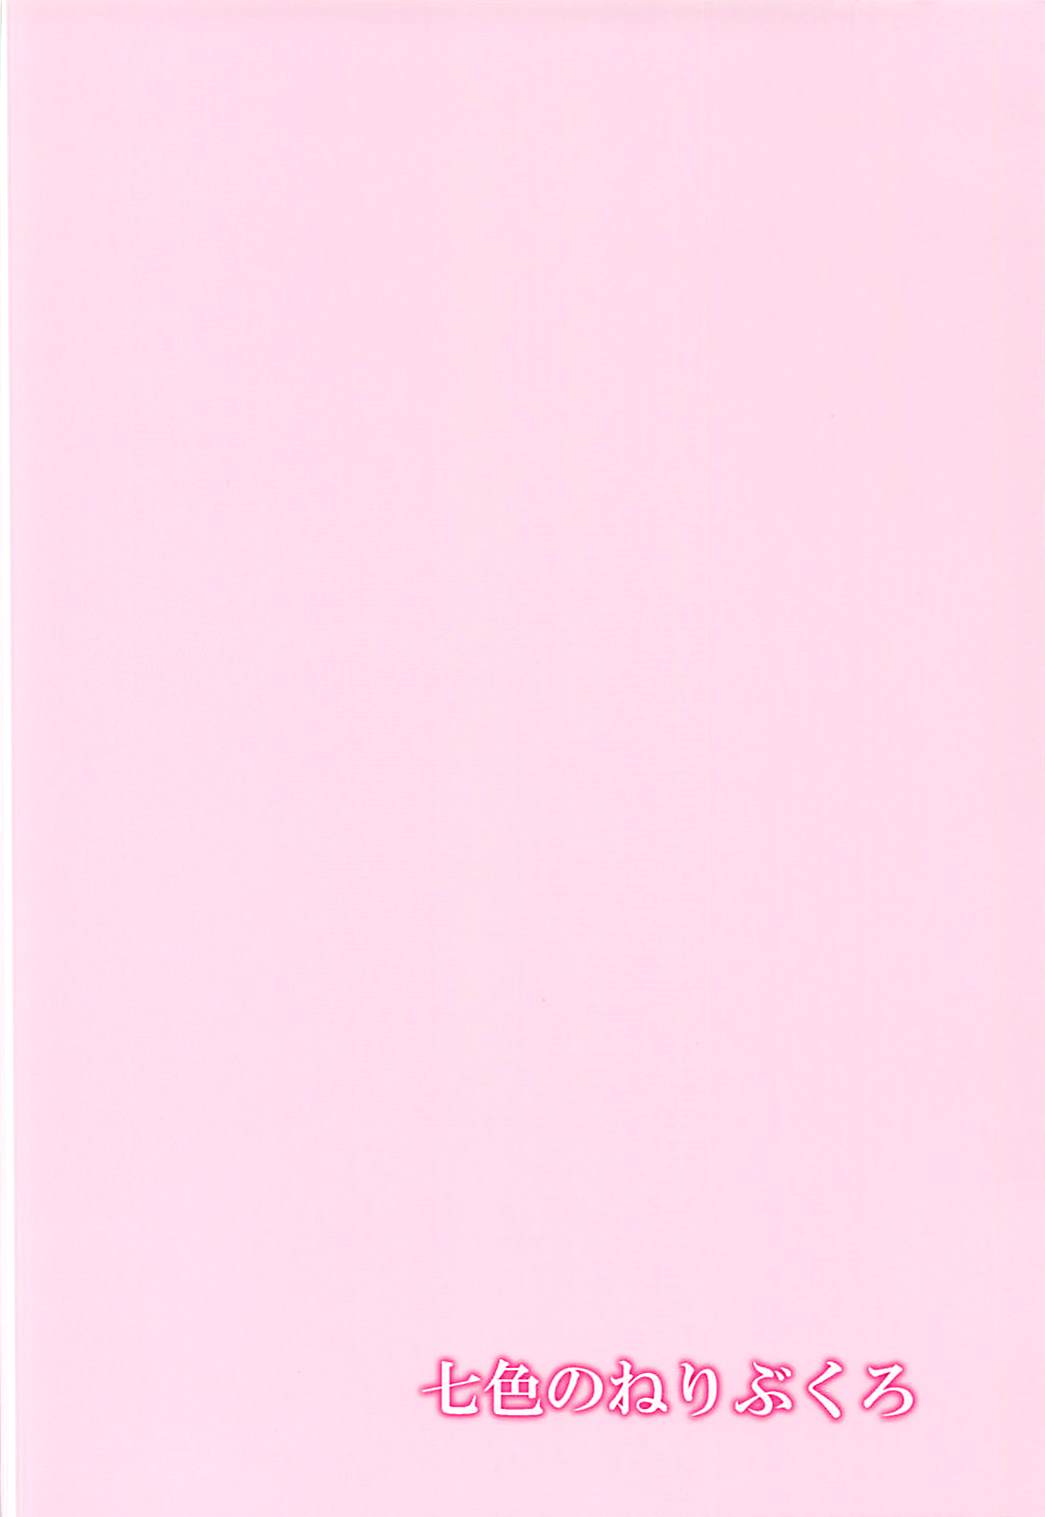 (Seihou Kaiiki Yuriranka-tou Kuushuu 7Senme) [Nanairo no Neribukuro (Nanashiki Fuka)] Ofuro de Futarikiri (Kantai Collection -KanColle-) (西方海域ユリランカ島空襲 七戦目) [七色のねりぶくろ (七色風香)] お風呂でふたりきり (艦隊これくしょん -艦これ-)